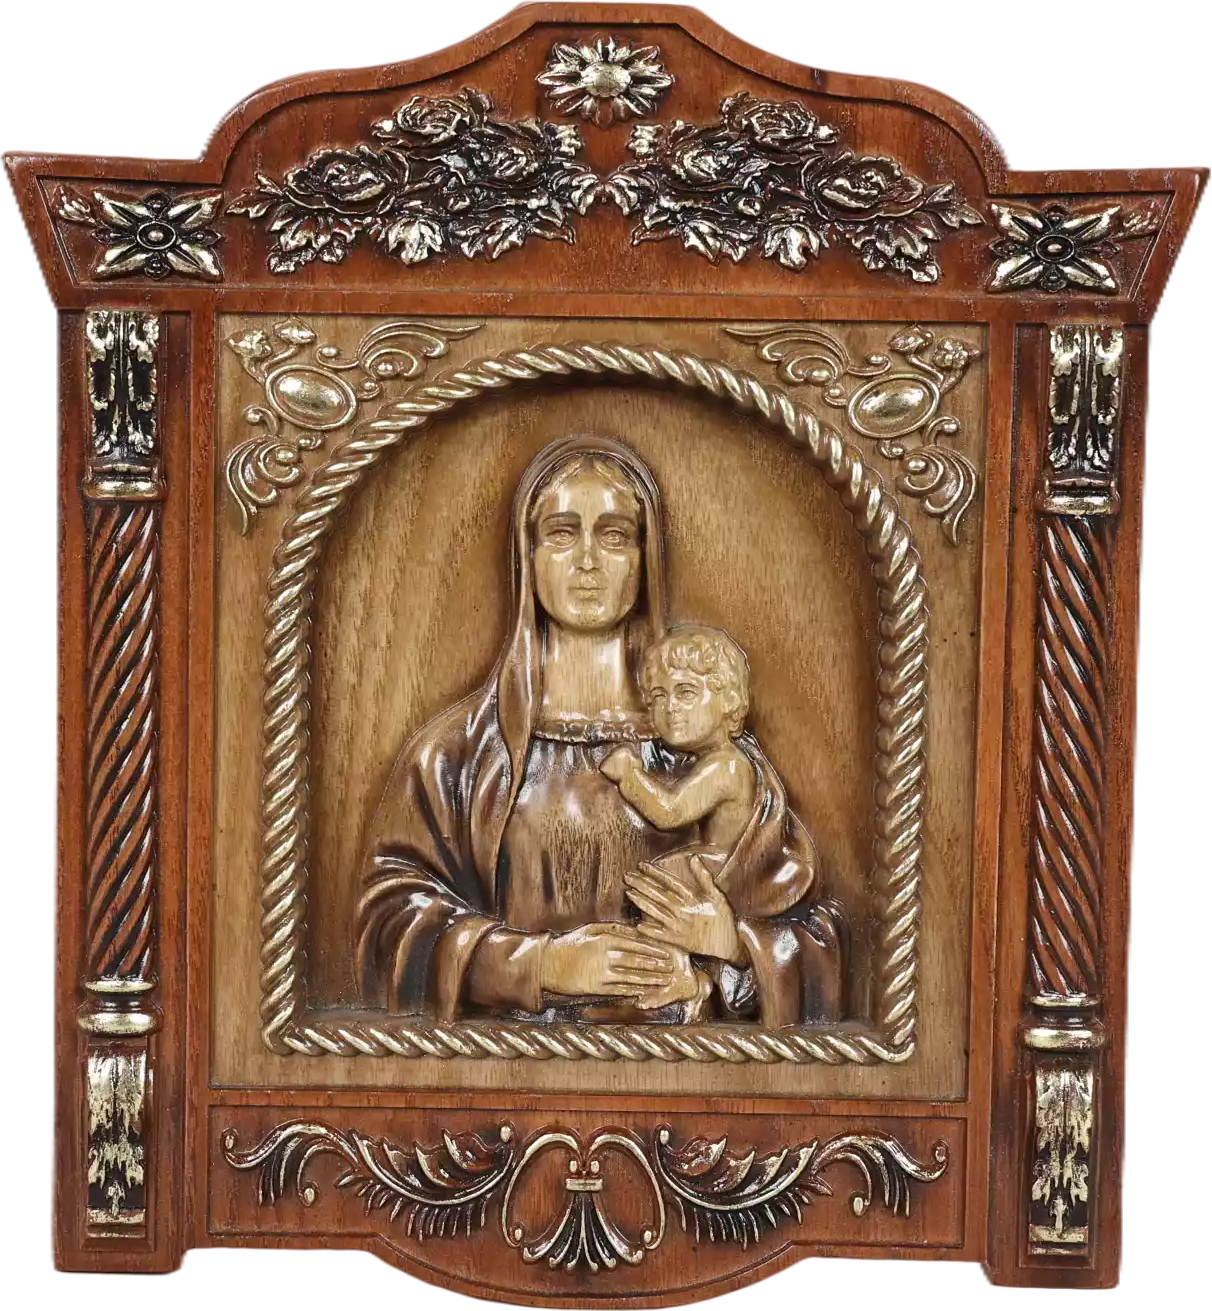 Икона Дева Мария с ребенком